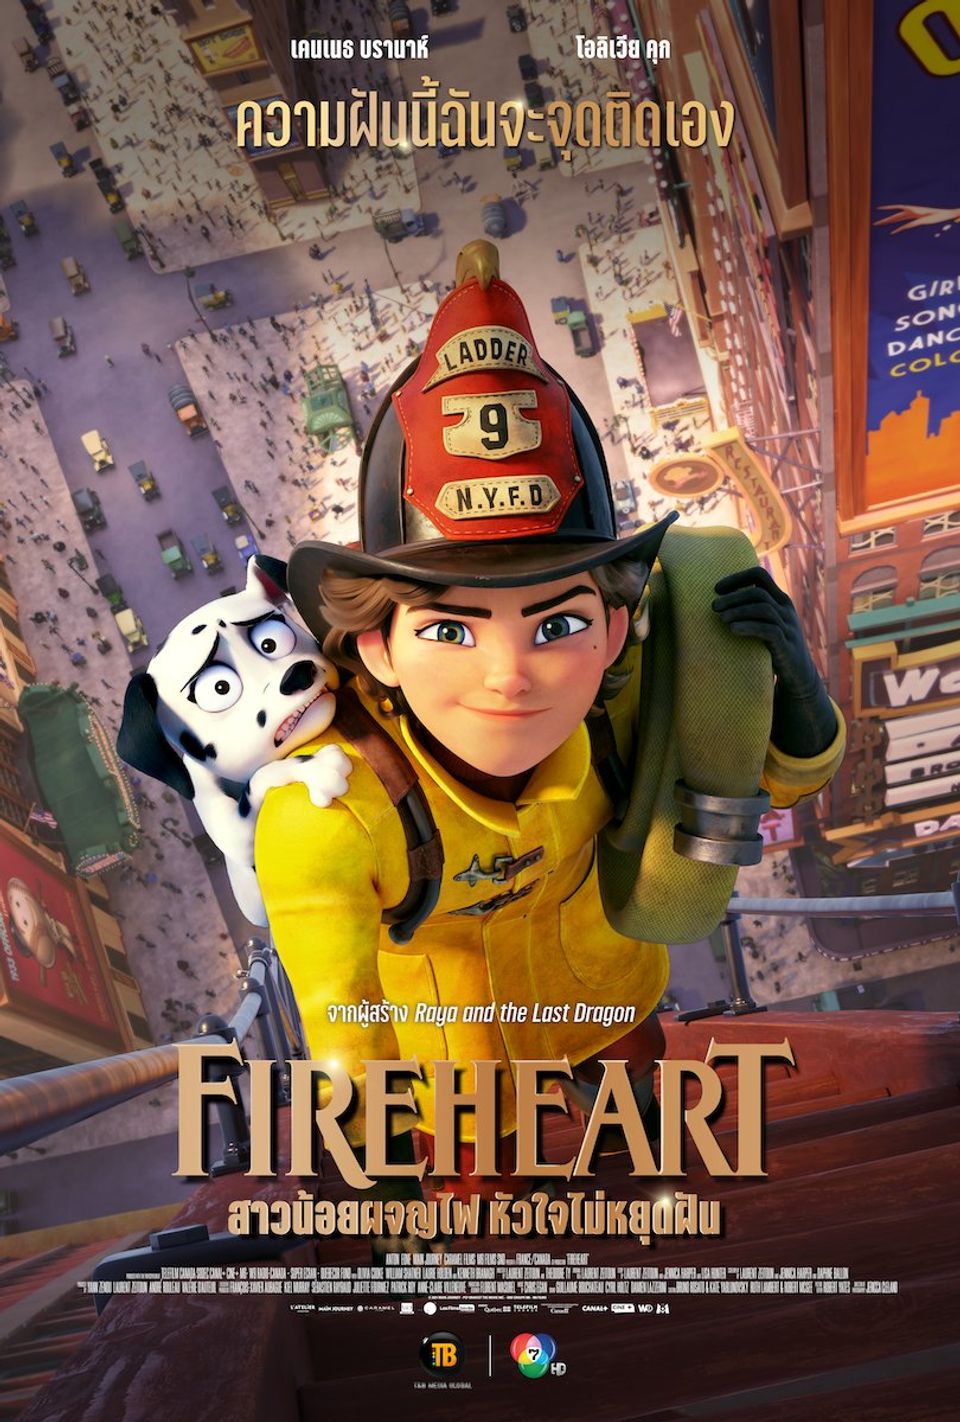 ภาพยนตร์แอนิเมชัน “สาวน้อยผจญไฟ หัวใจไม่หยุดฝัน” (FIREHEART)